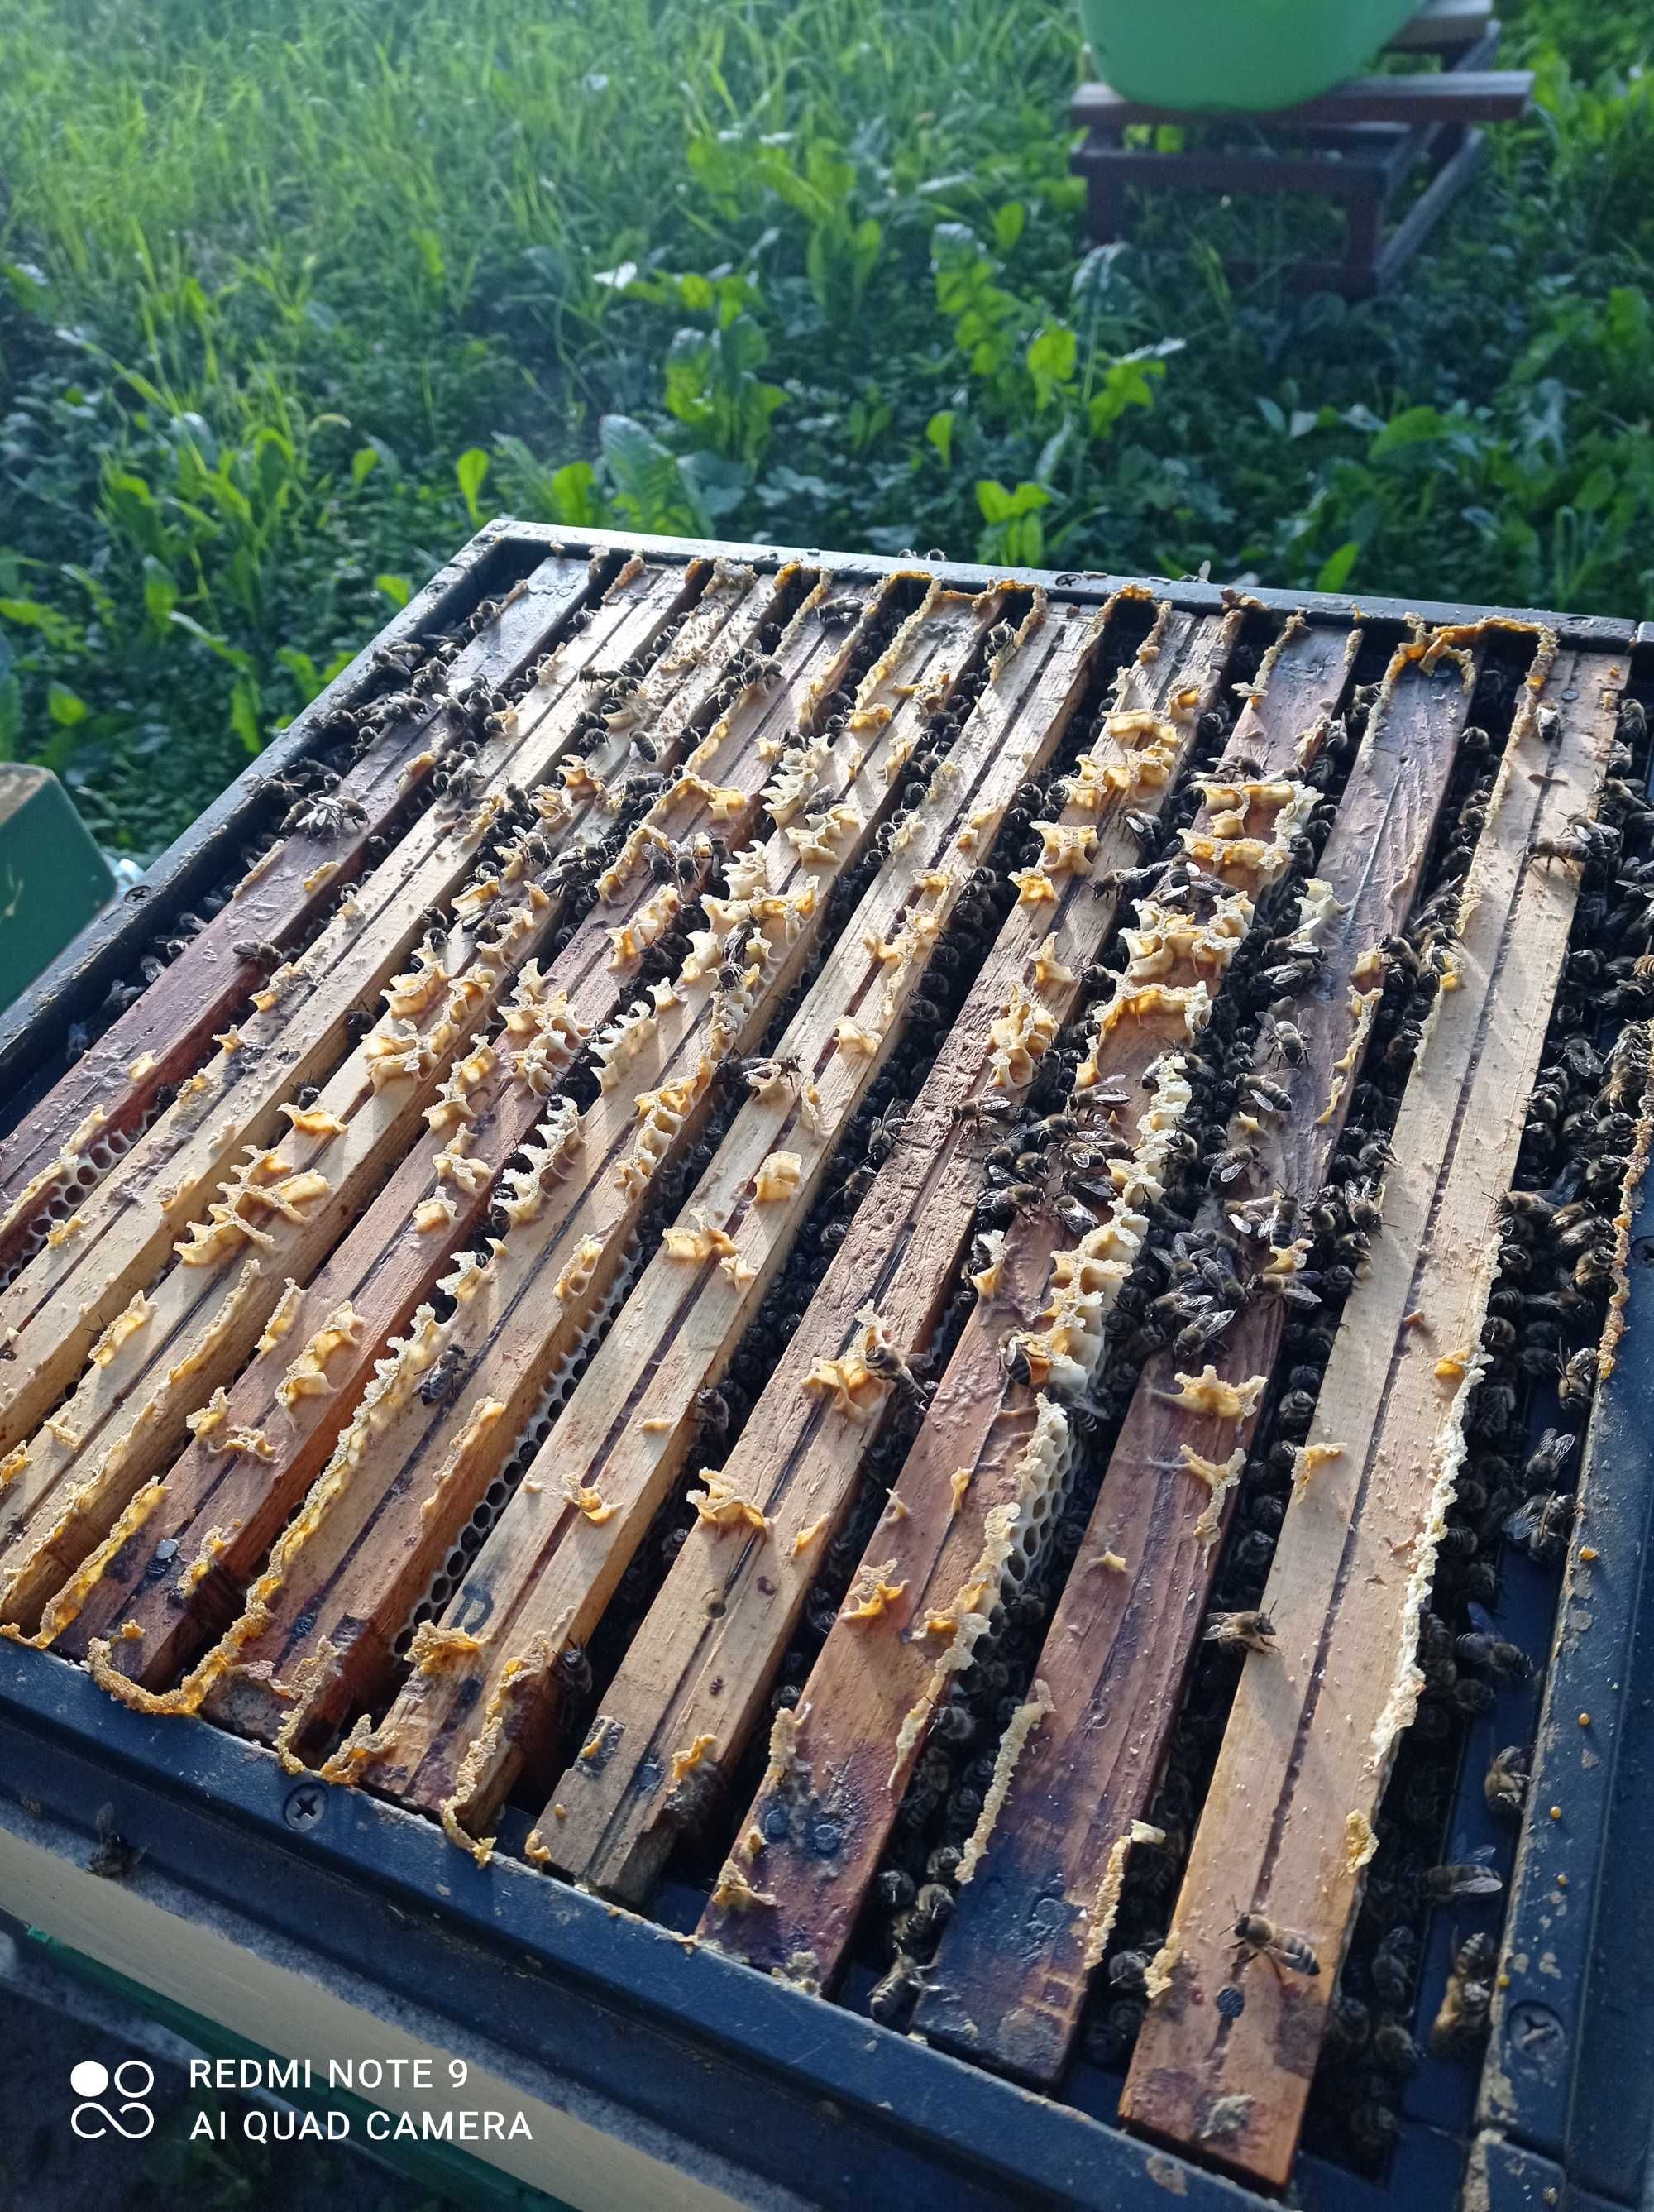 Rodziny pszczele i odkłady